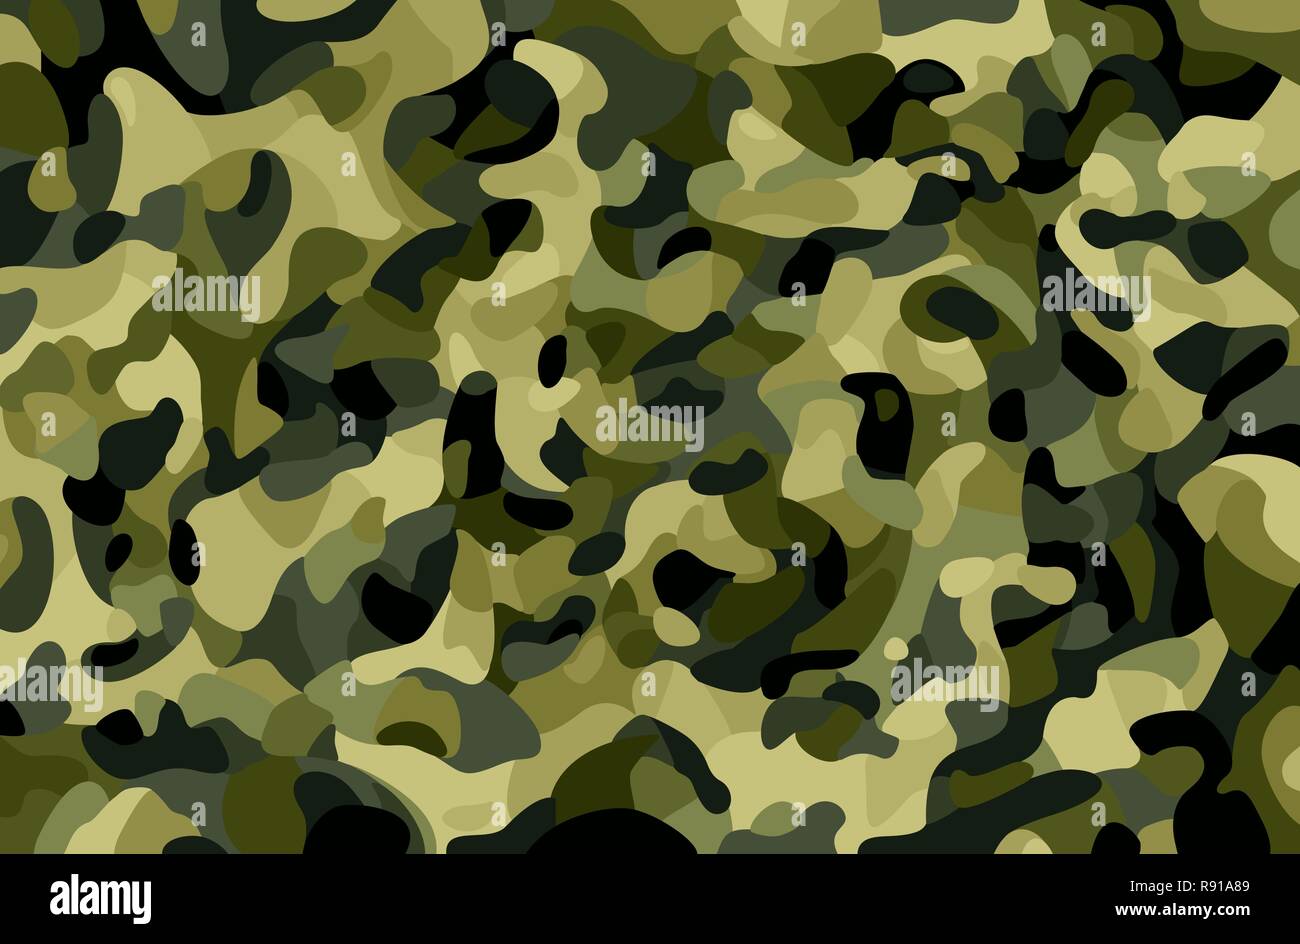 Camouflage Hintergrund. Grün, Braun, Schwarz, oliv Farben Wald Textur. Trendigen Stil camo. Drucken. Militärische Thema. Vector Illustration. Stock Vektor